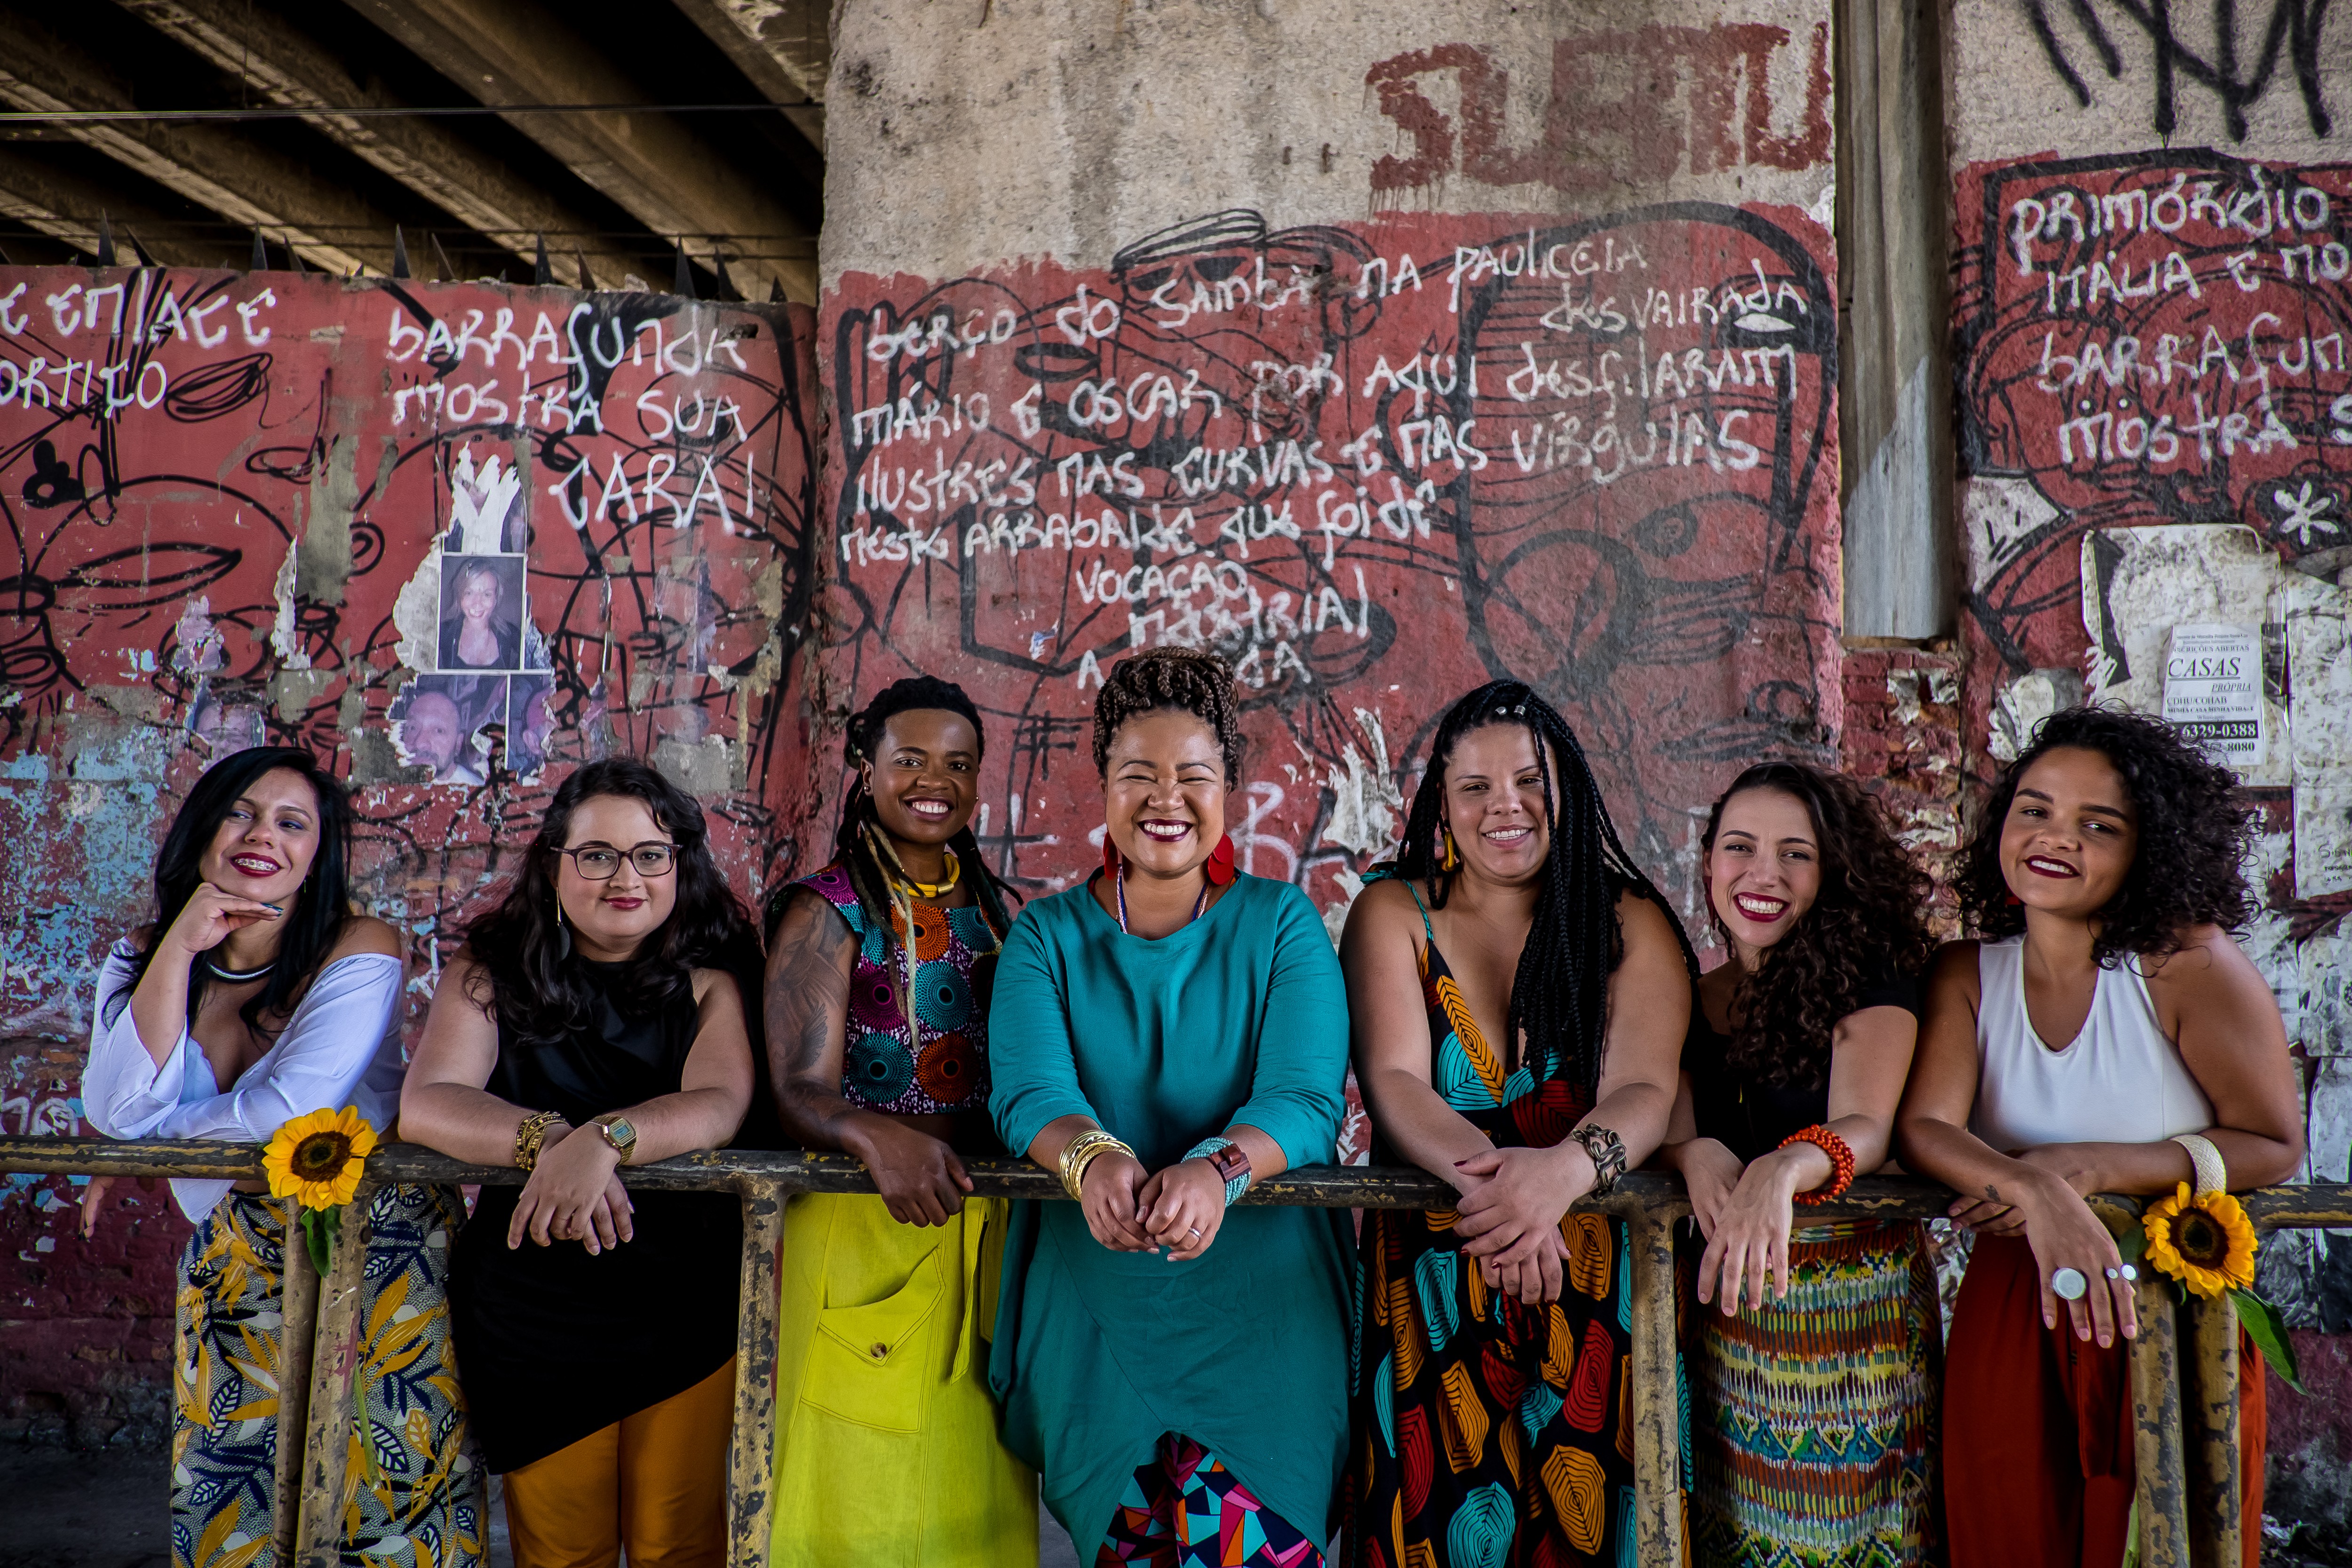 Samba de Dandara, roda composta apenas por mulheres, lança seu primeiro disco autoral (Foto: Divulgação)